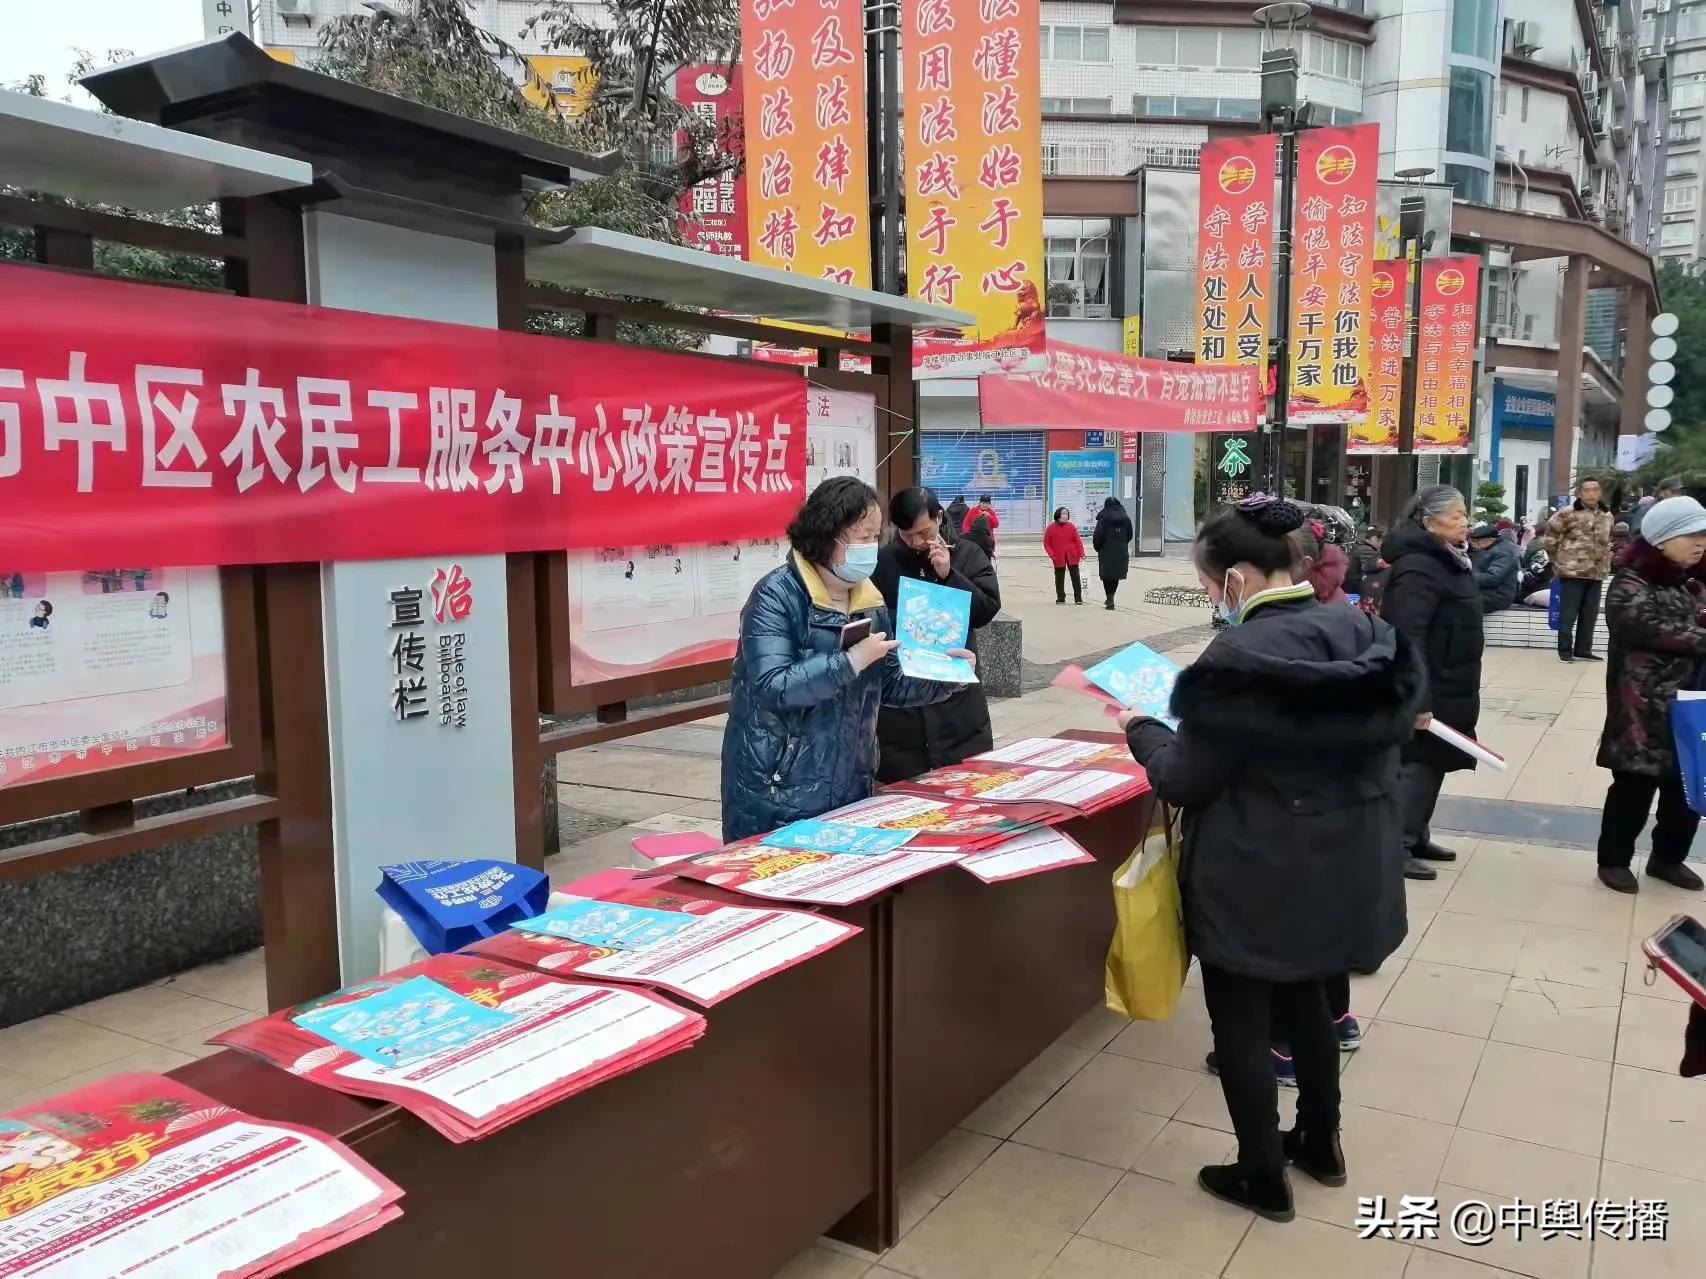 内江市市中区牌楼街道举办“农民工政策”宣传活动